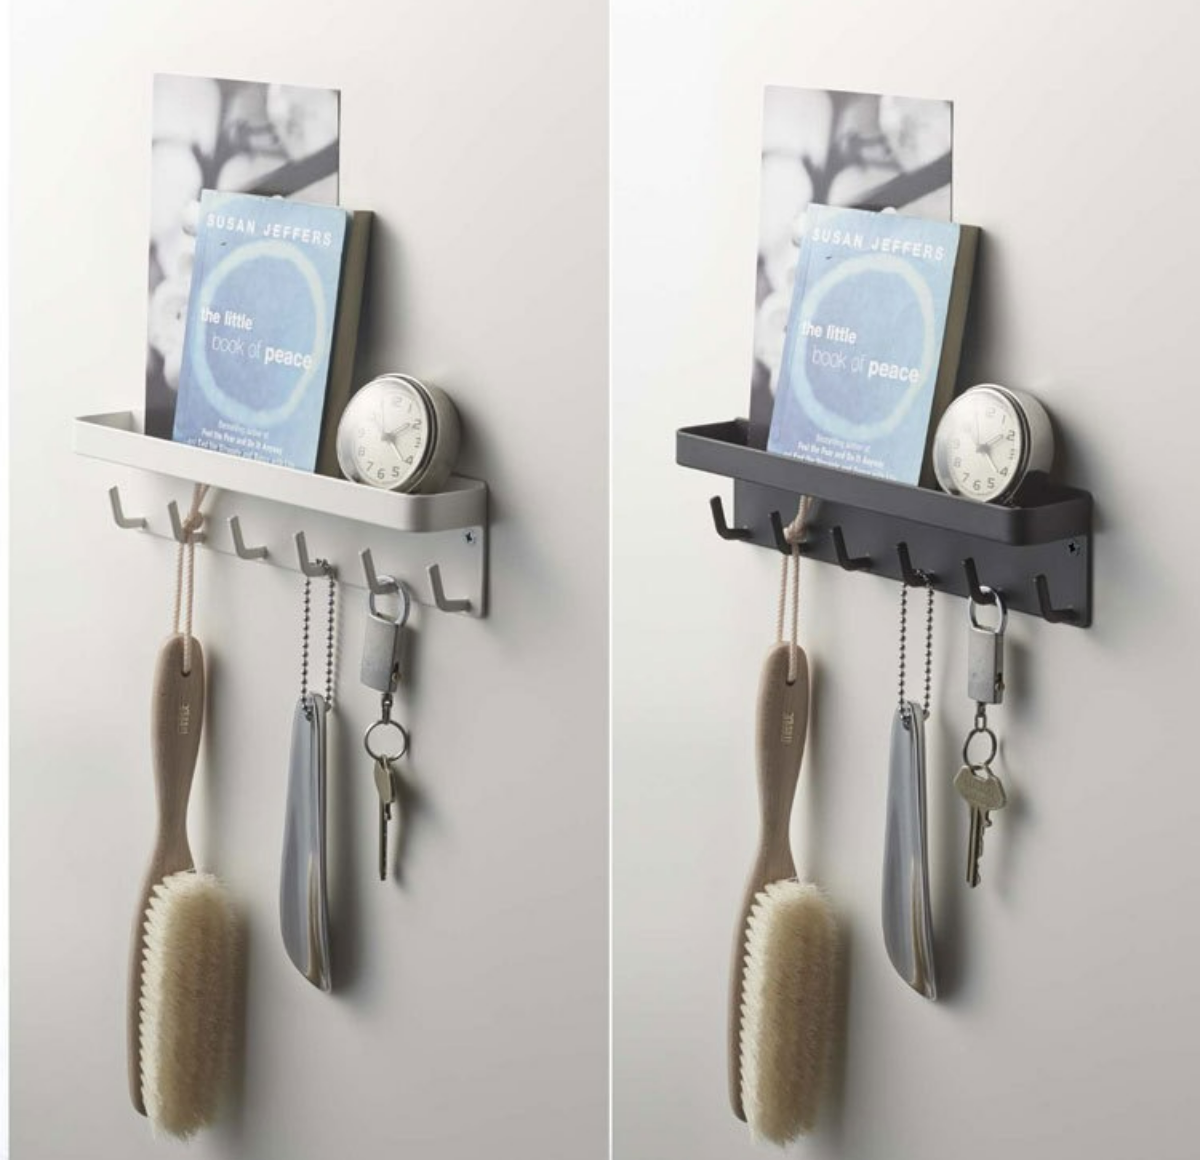 『スマート収納』マグネットキーフック&トレイ | スチール壁面に磁石で簡単取り付けのキーフック&トレイ。トレイ付きで荷受時の印鑑やサインがスムーズに。壁に付ければ、ディスプレイ感覚で小物を魅せて収納。